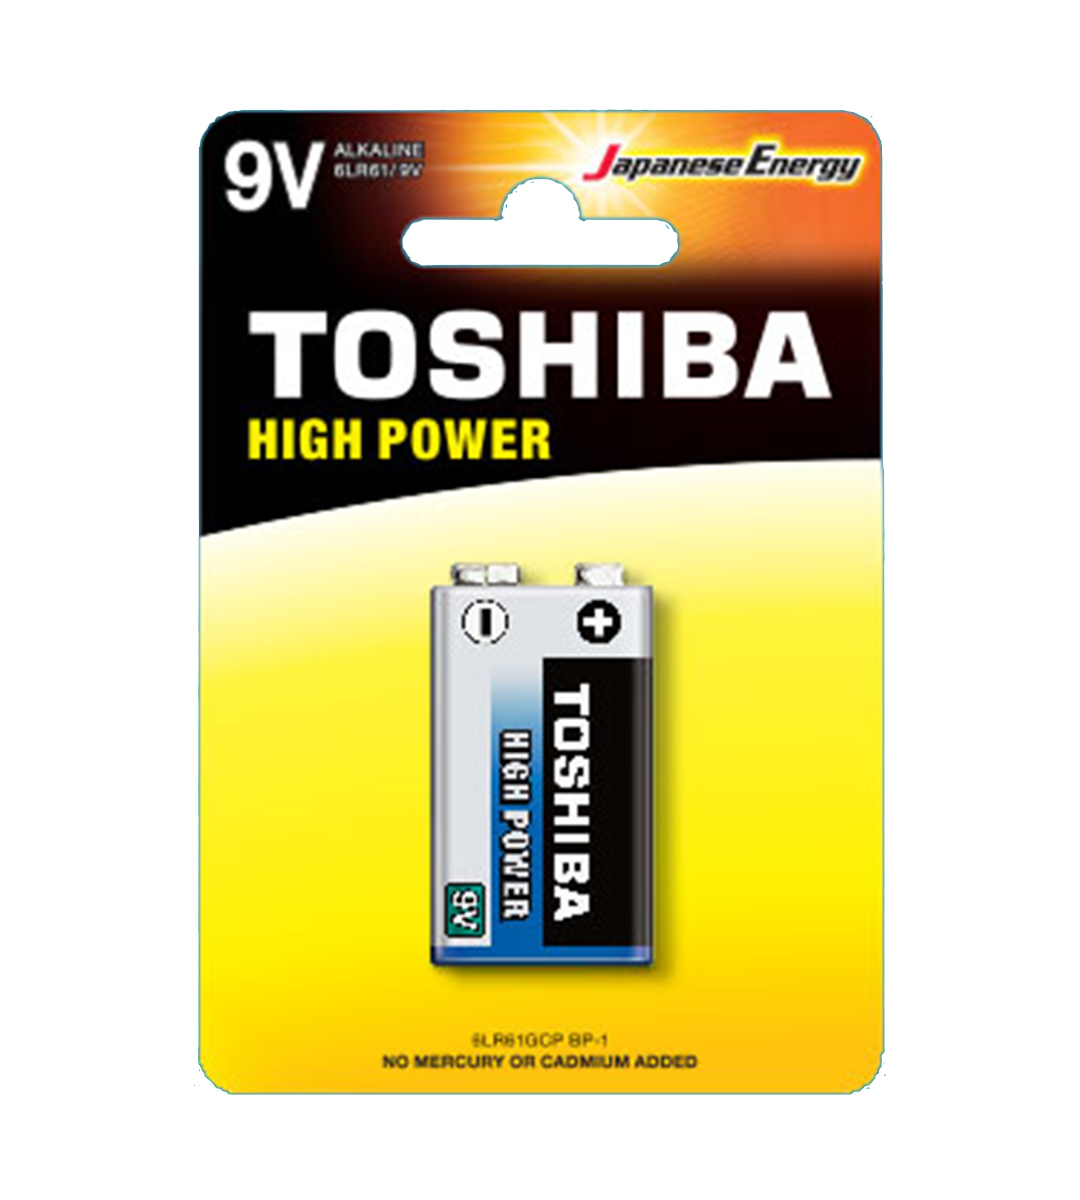 Toshiba Size 9V High Power Alkaline Batteries, 6LR61GCP-BP-1CN (1 Pack)